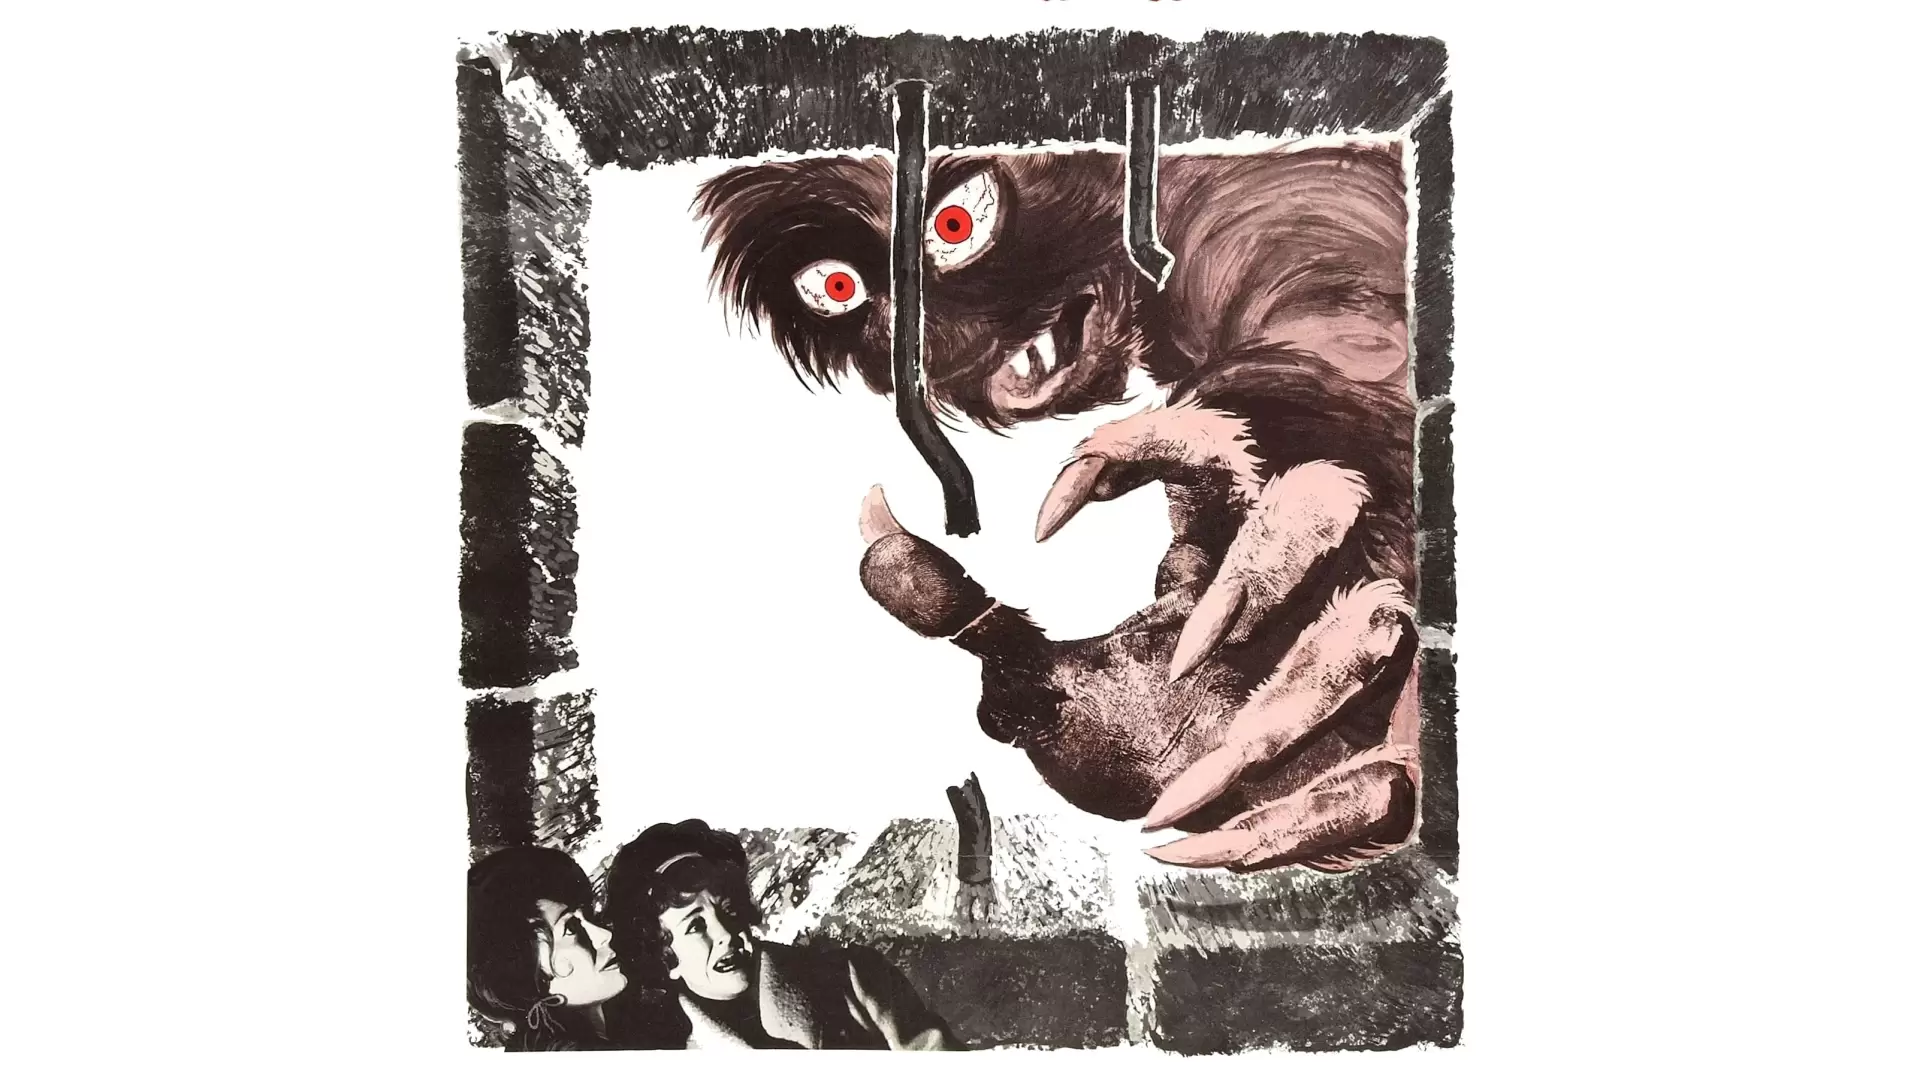 دانلود فیلم The Beast in the Cellar 1971